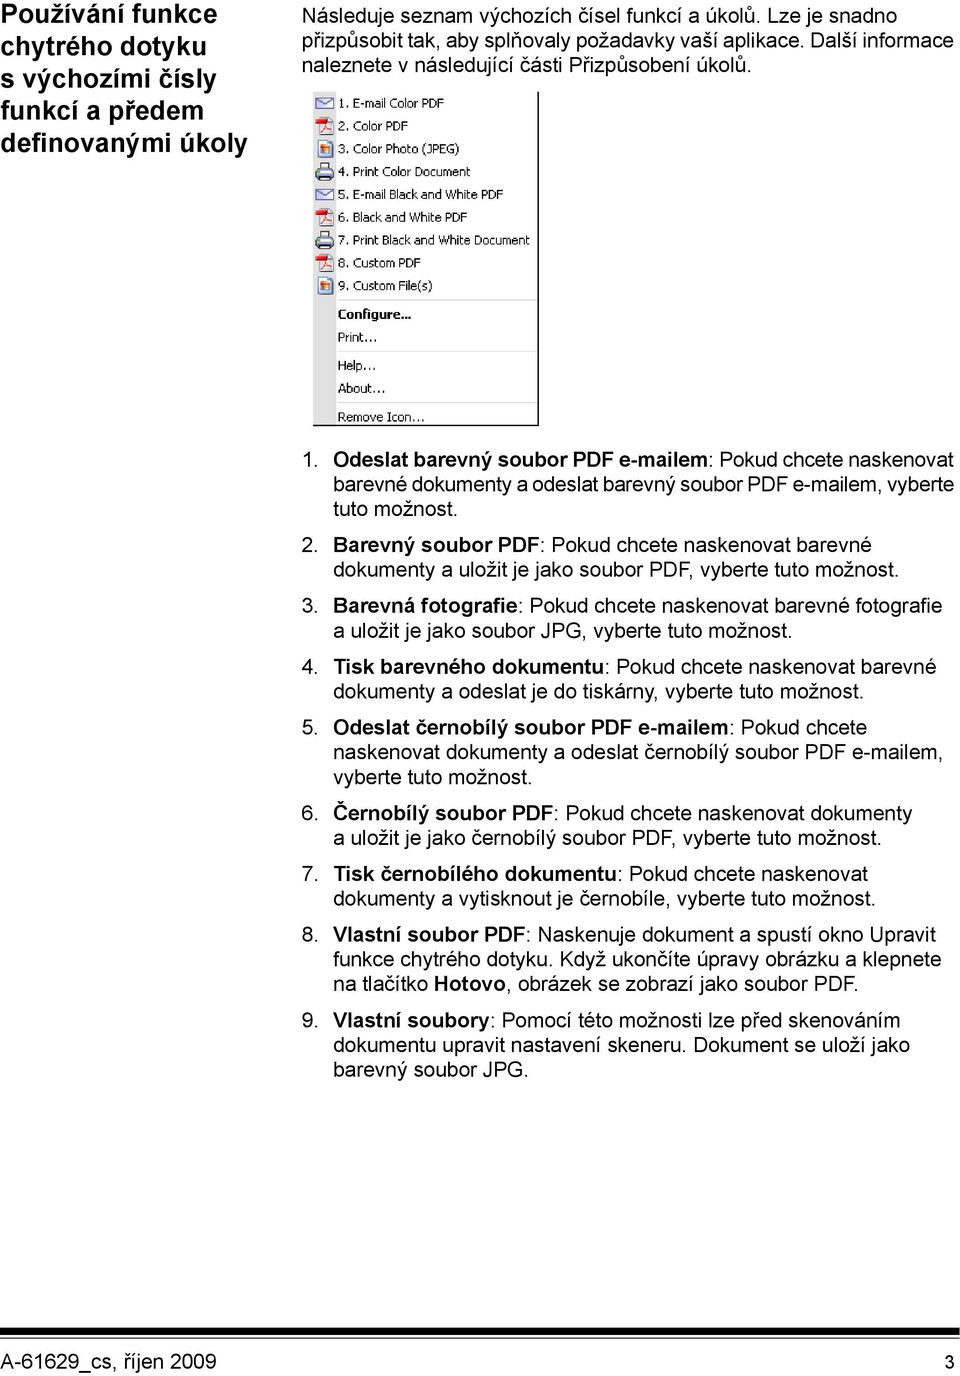 Odeslat barevný soubor PDF e-mailem: Pokud chcete naskenovat barevné dokumenty a odeslat barevný soubor PDF e-mailem, vyberte tuto možnost. 2.